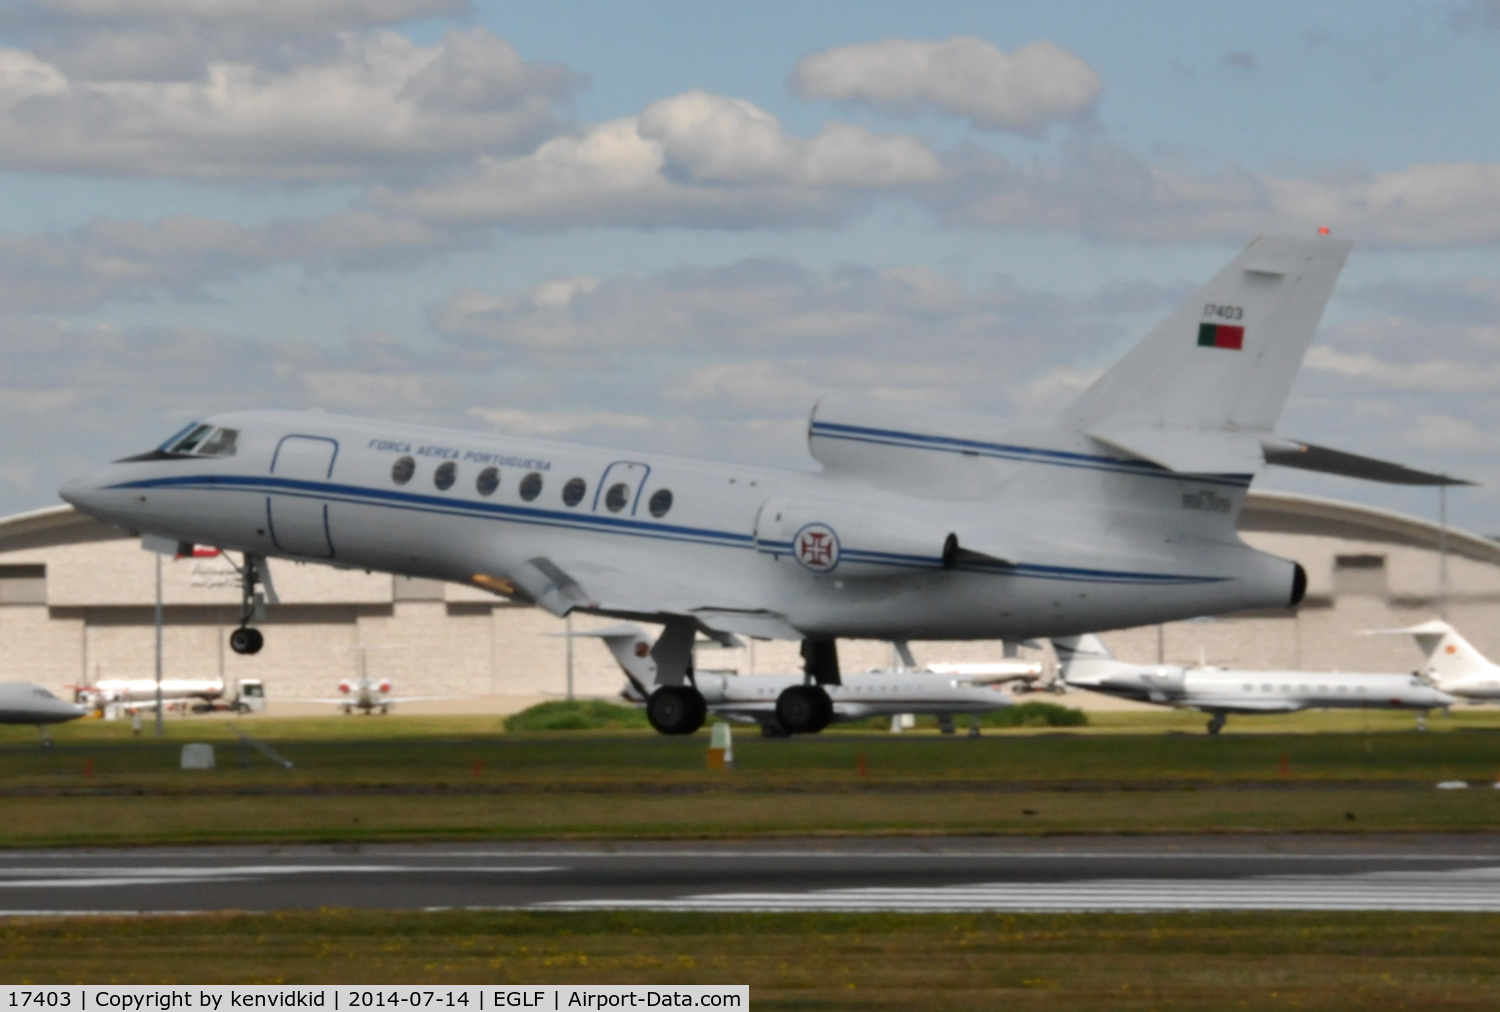 17403, 1990 Dassault Falcon 50 C/N 221, VIP arrival.